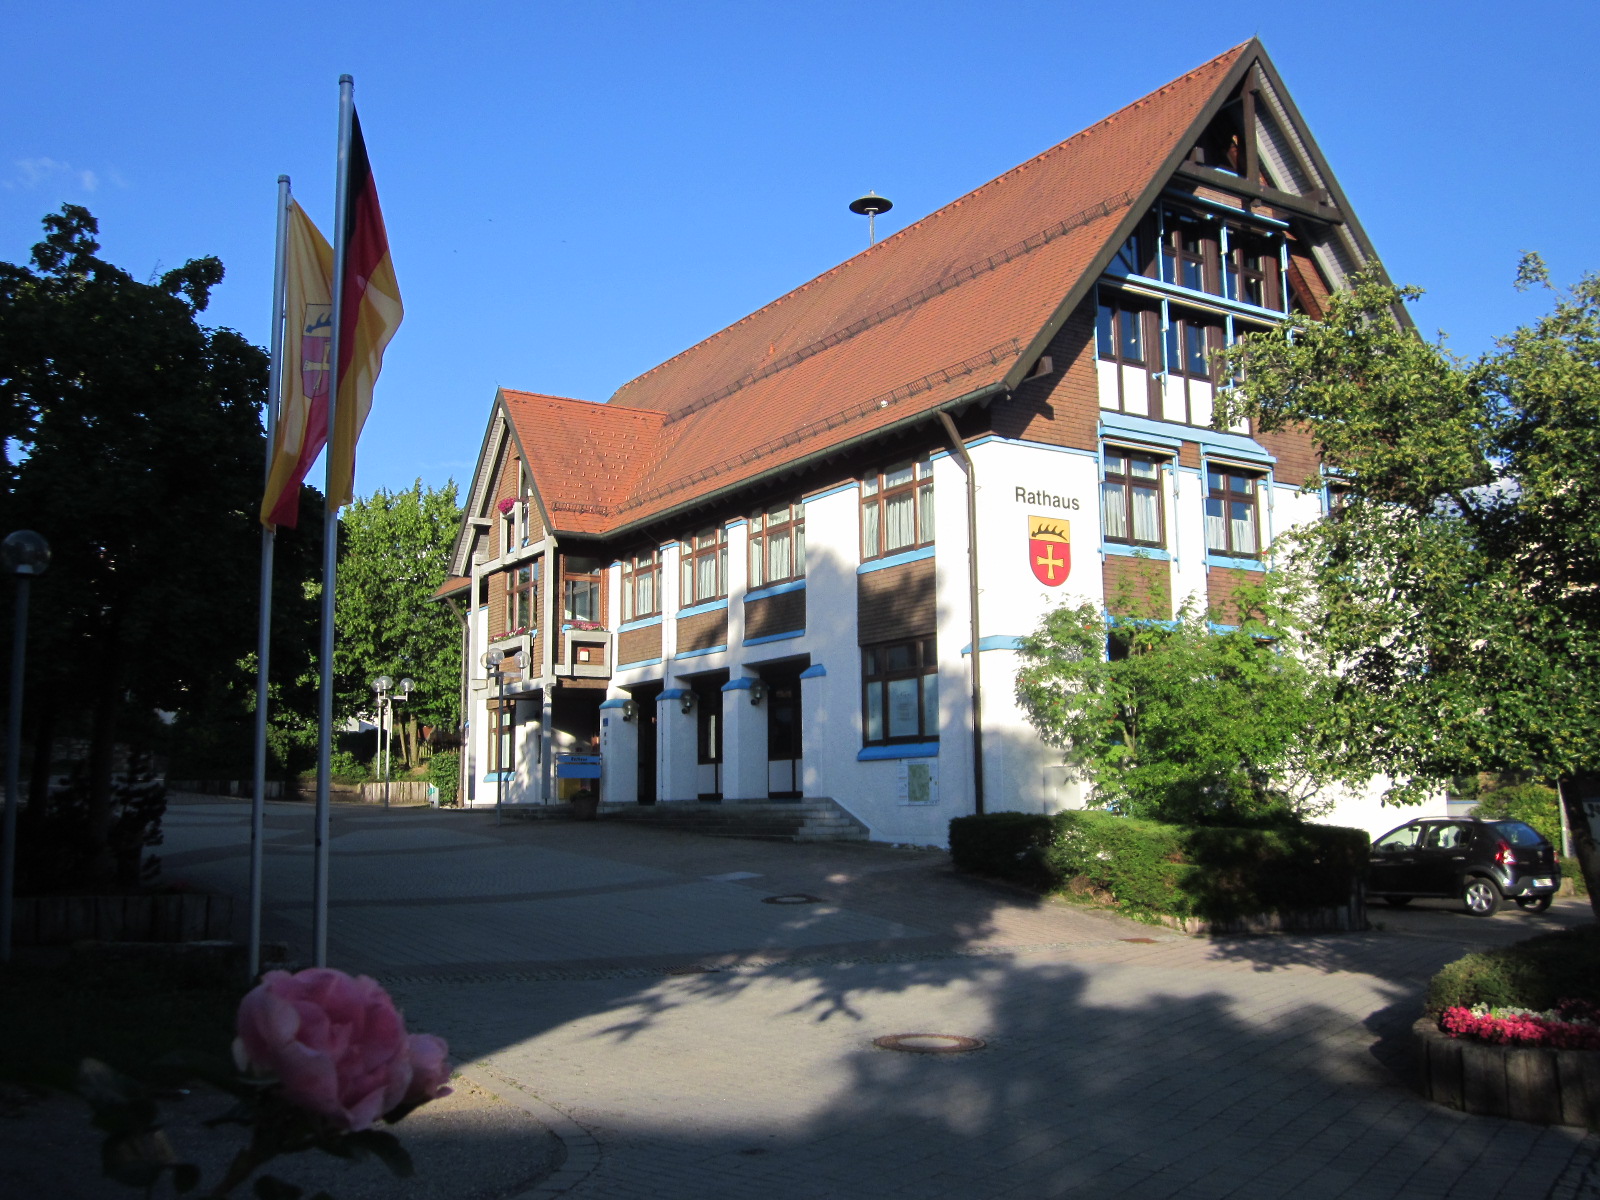  Rathaus Schopfloch 